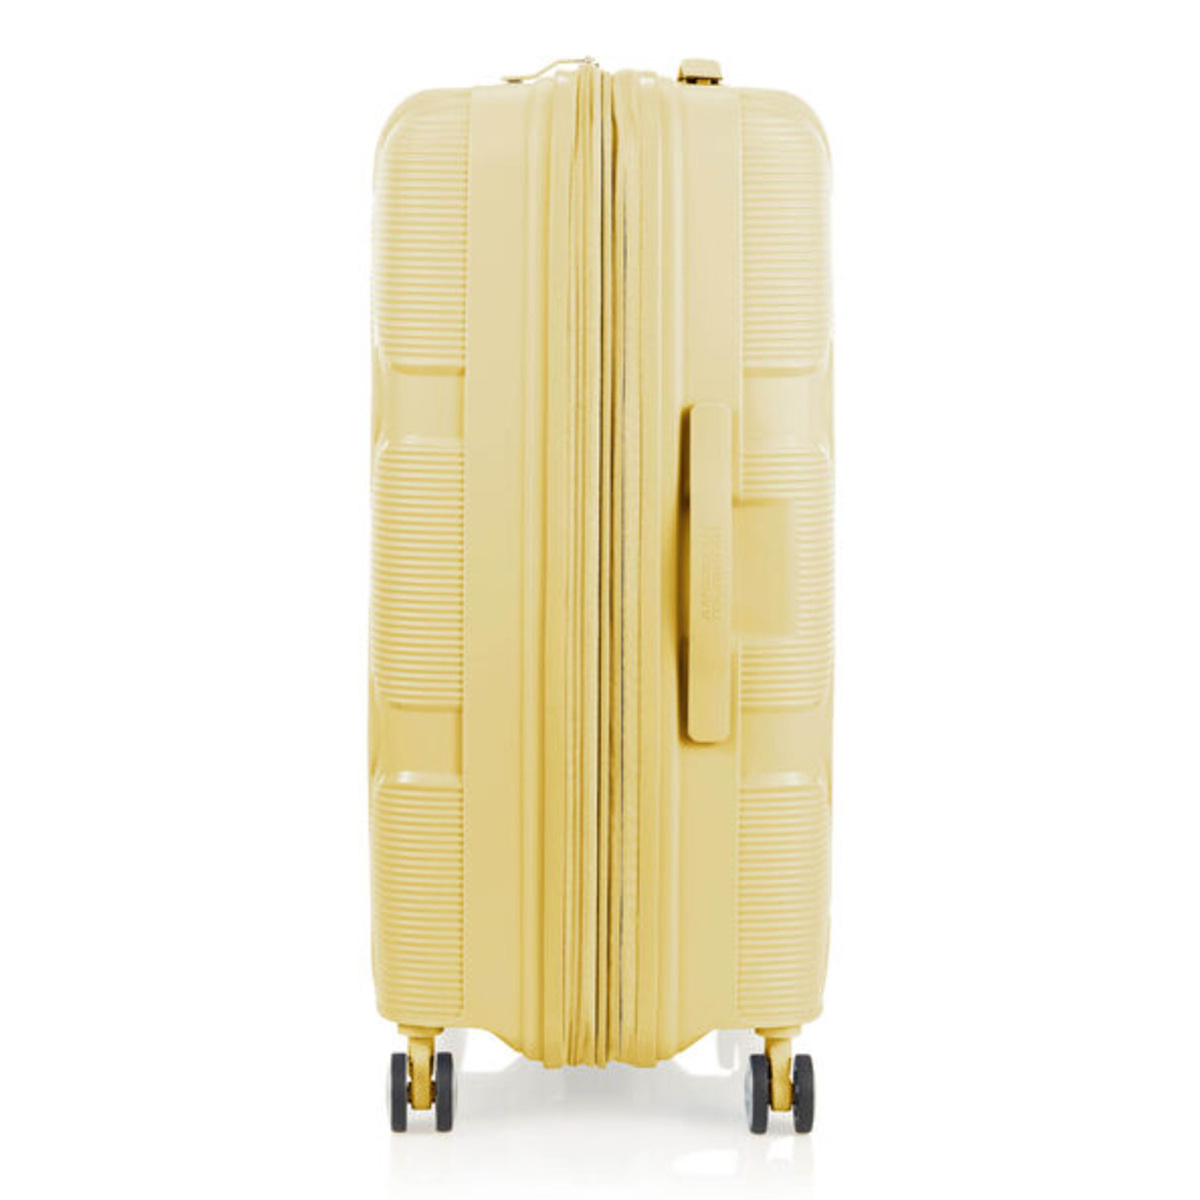 امريكان توريستر حقيبة سفر بعجلات صلبة إنستاجون سبينر مع موسع وقفل TSA، 55 سم، أصفر فاتح